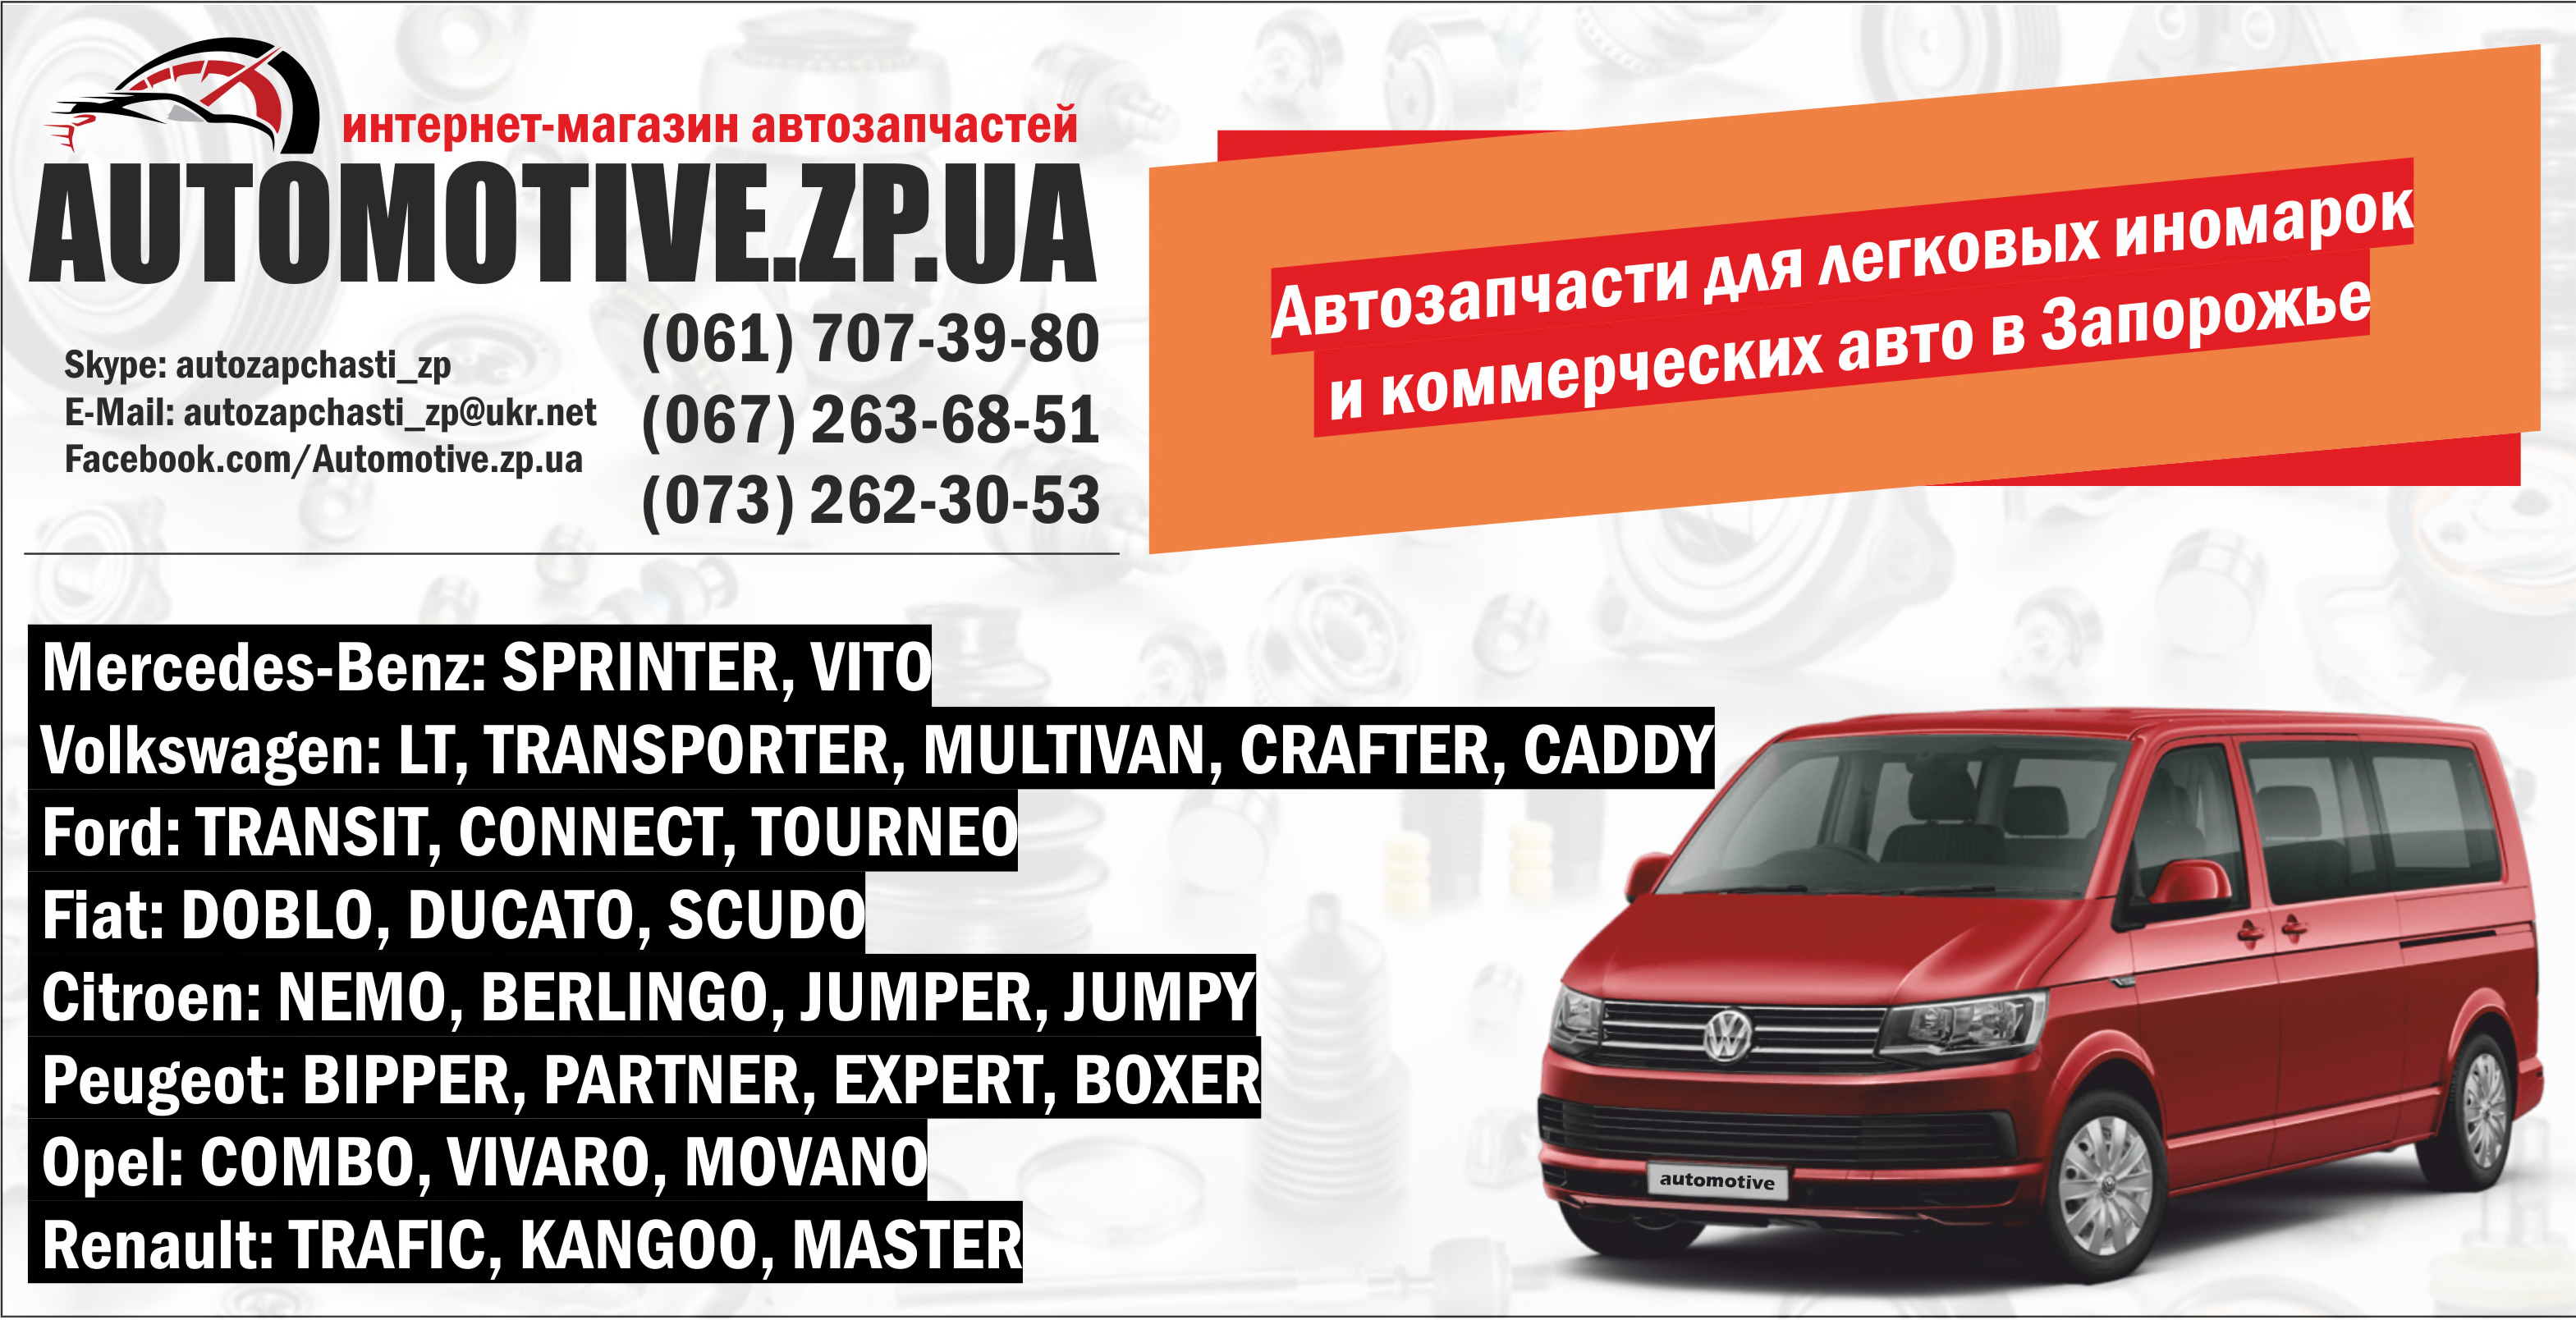 Купить в Запорожье автозапчасти и комплектующие к коммерческому транспорту в наличии и под заказ.
 
 
 